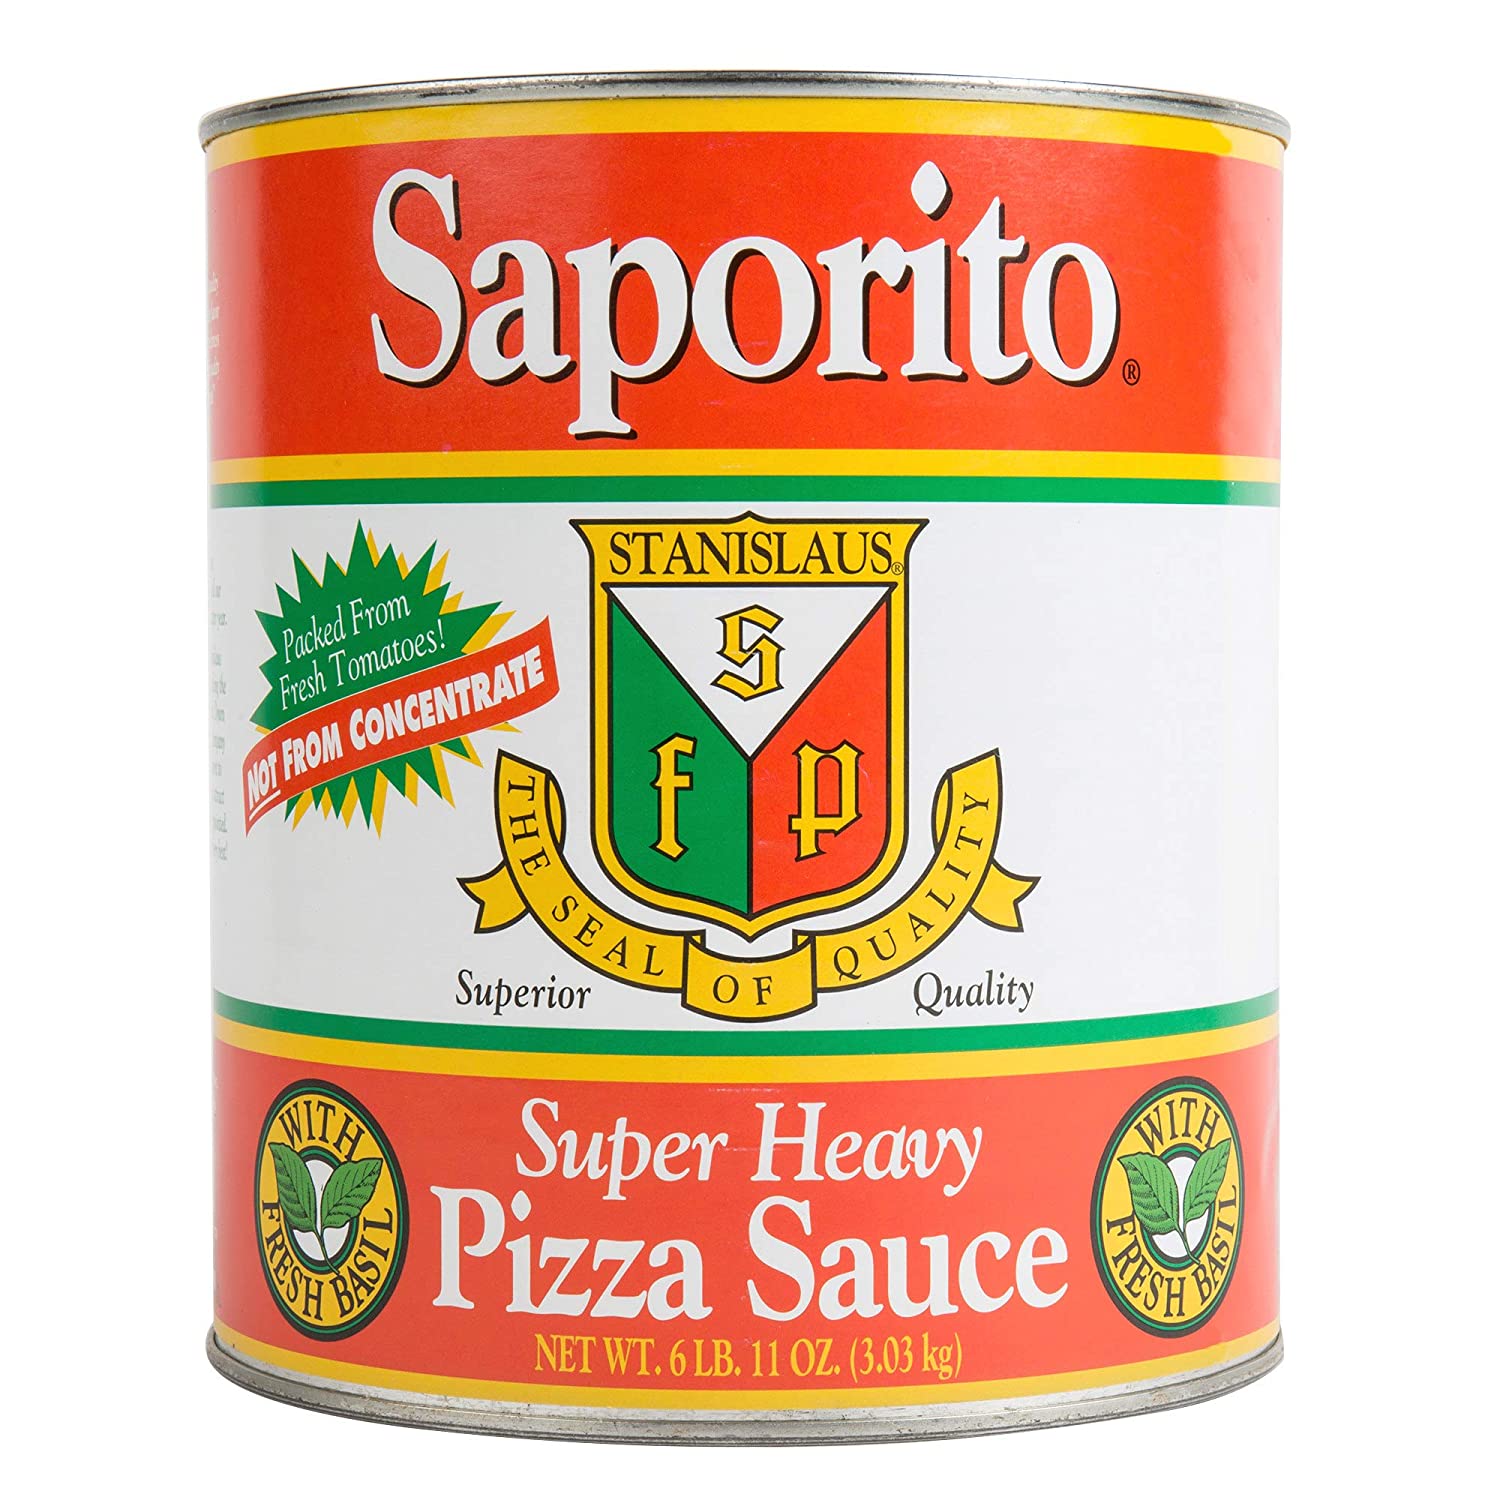 Saporito Super Heavy Pizza Sauce....Yum.